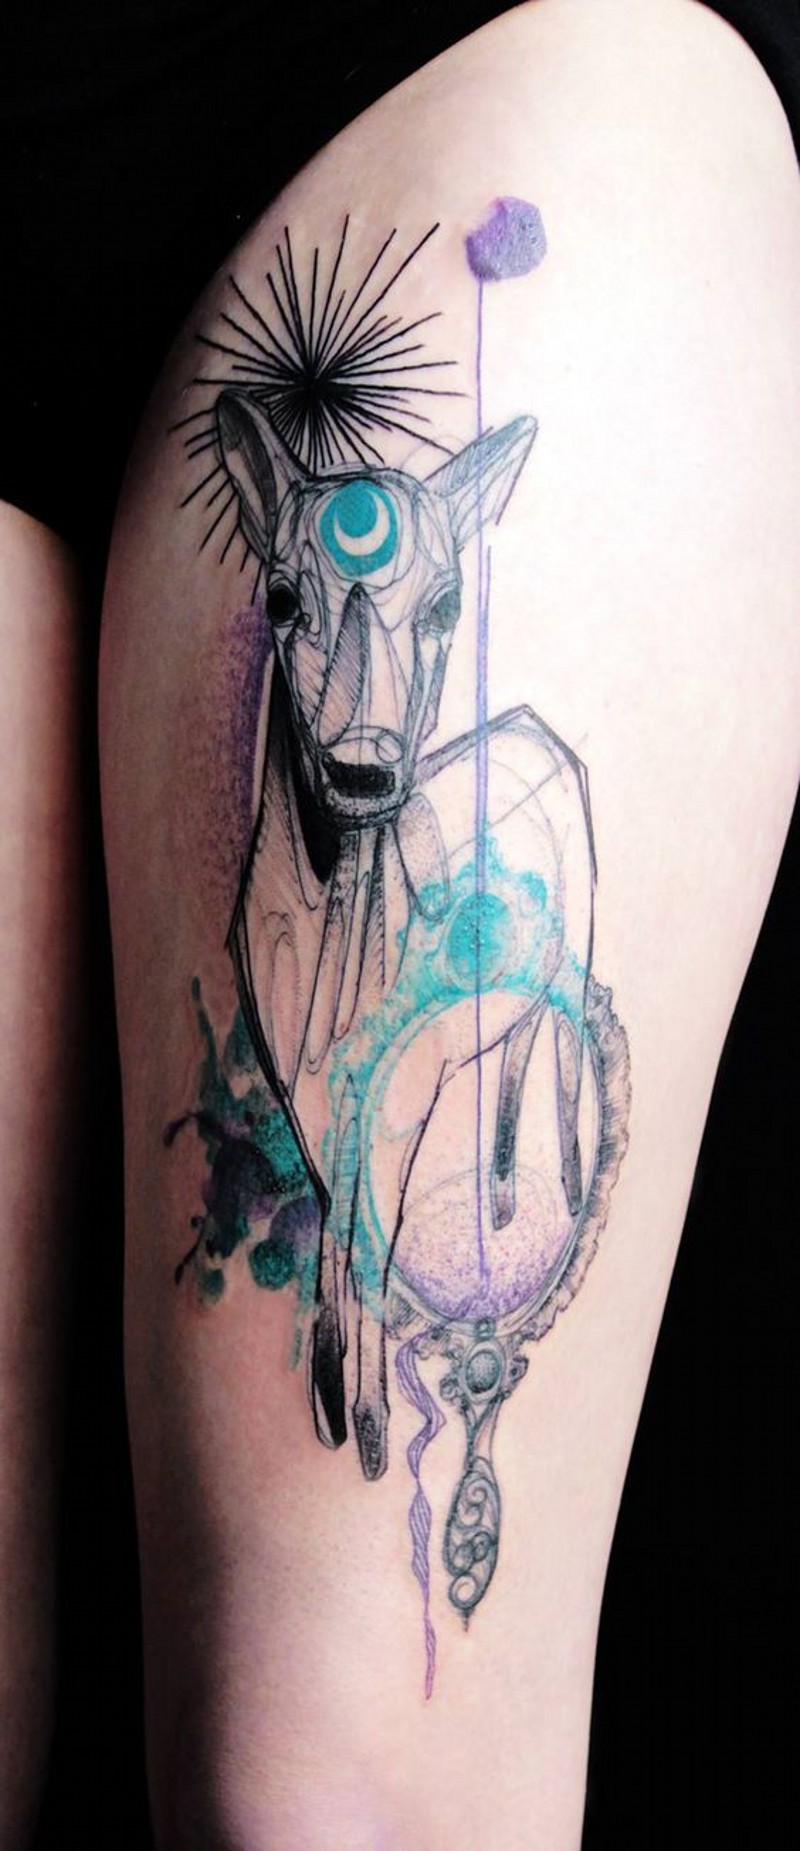 大腿抽象风格的彩色神秘鹿纹身图案